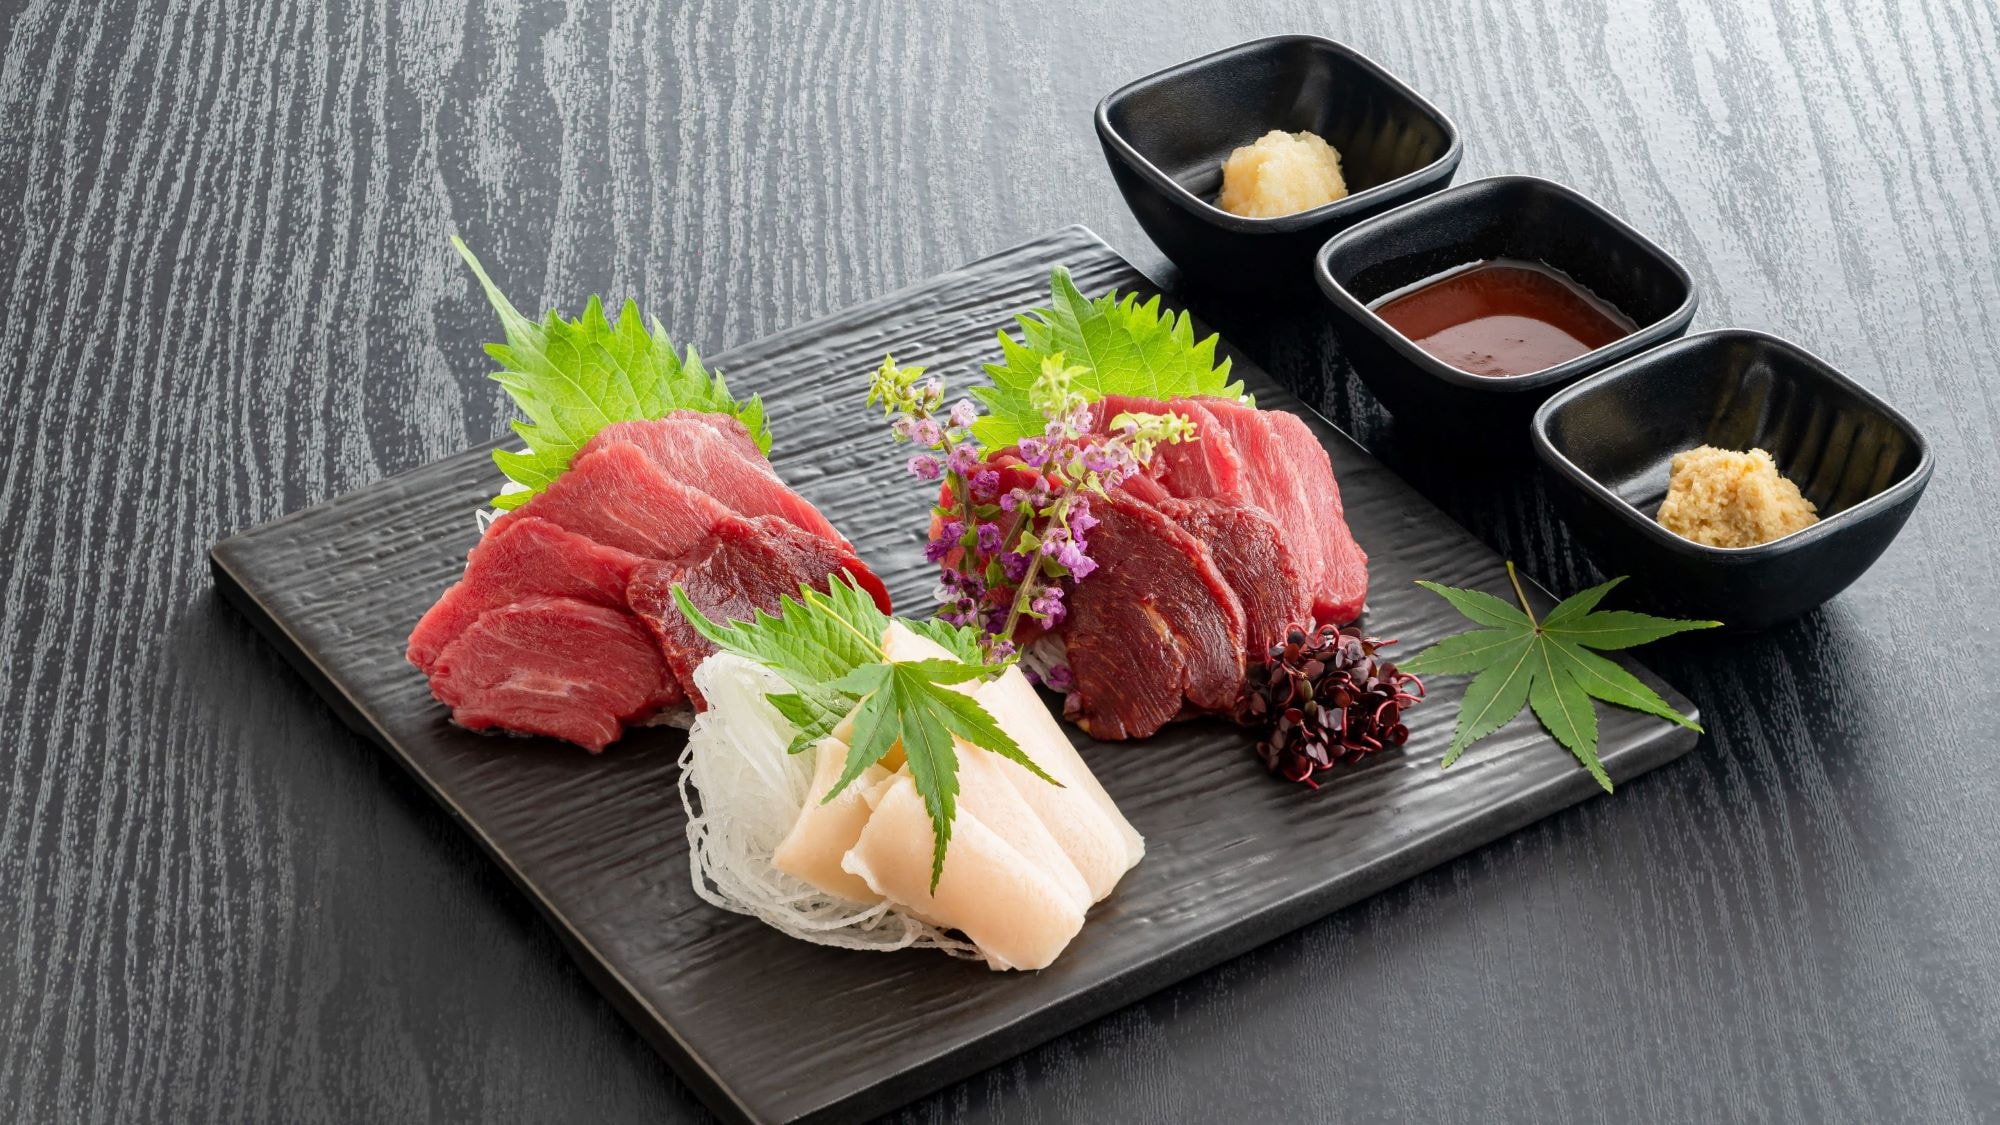 Bespoke horse sashimi * 3 / 1-5 / 31